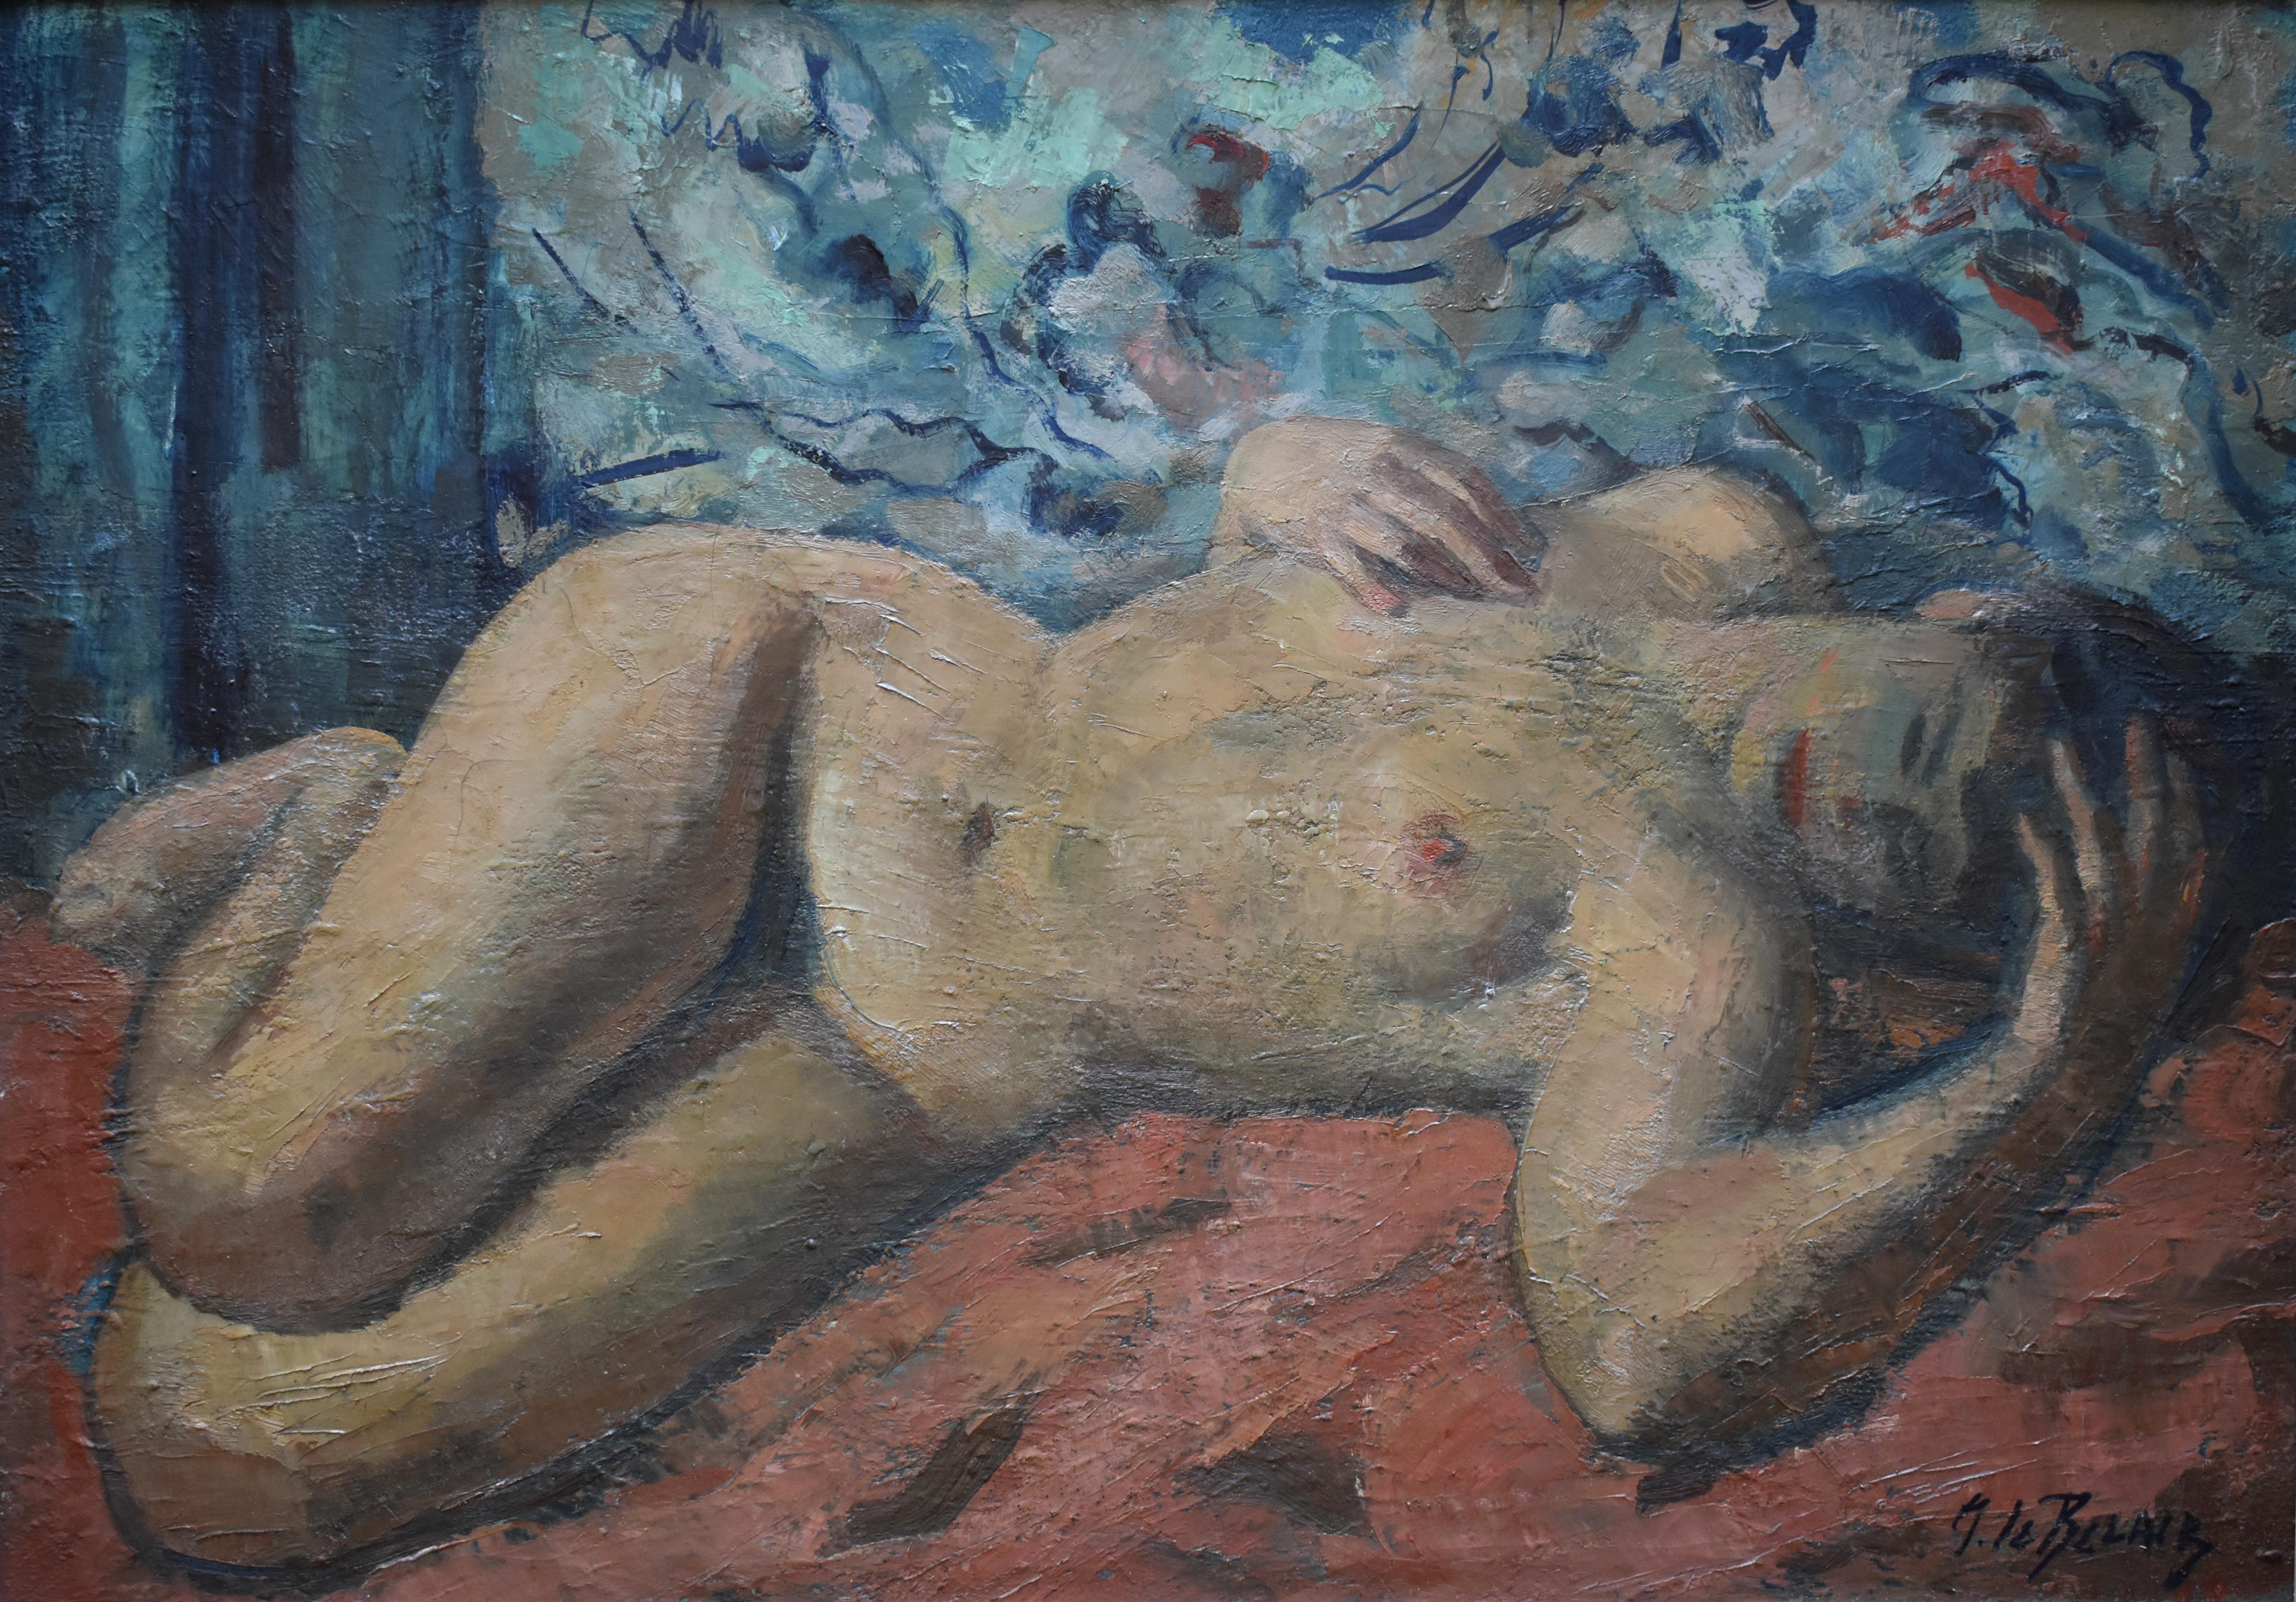 Pierre Mitiffiot DE BÉLAIR (1892-1956) Postimpressionistischer Akt – Painting von Pierre de Belair